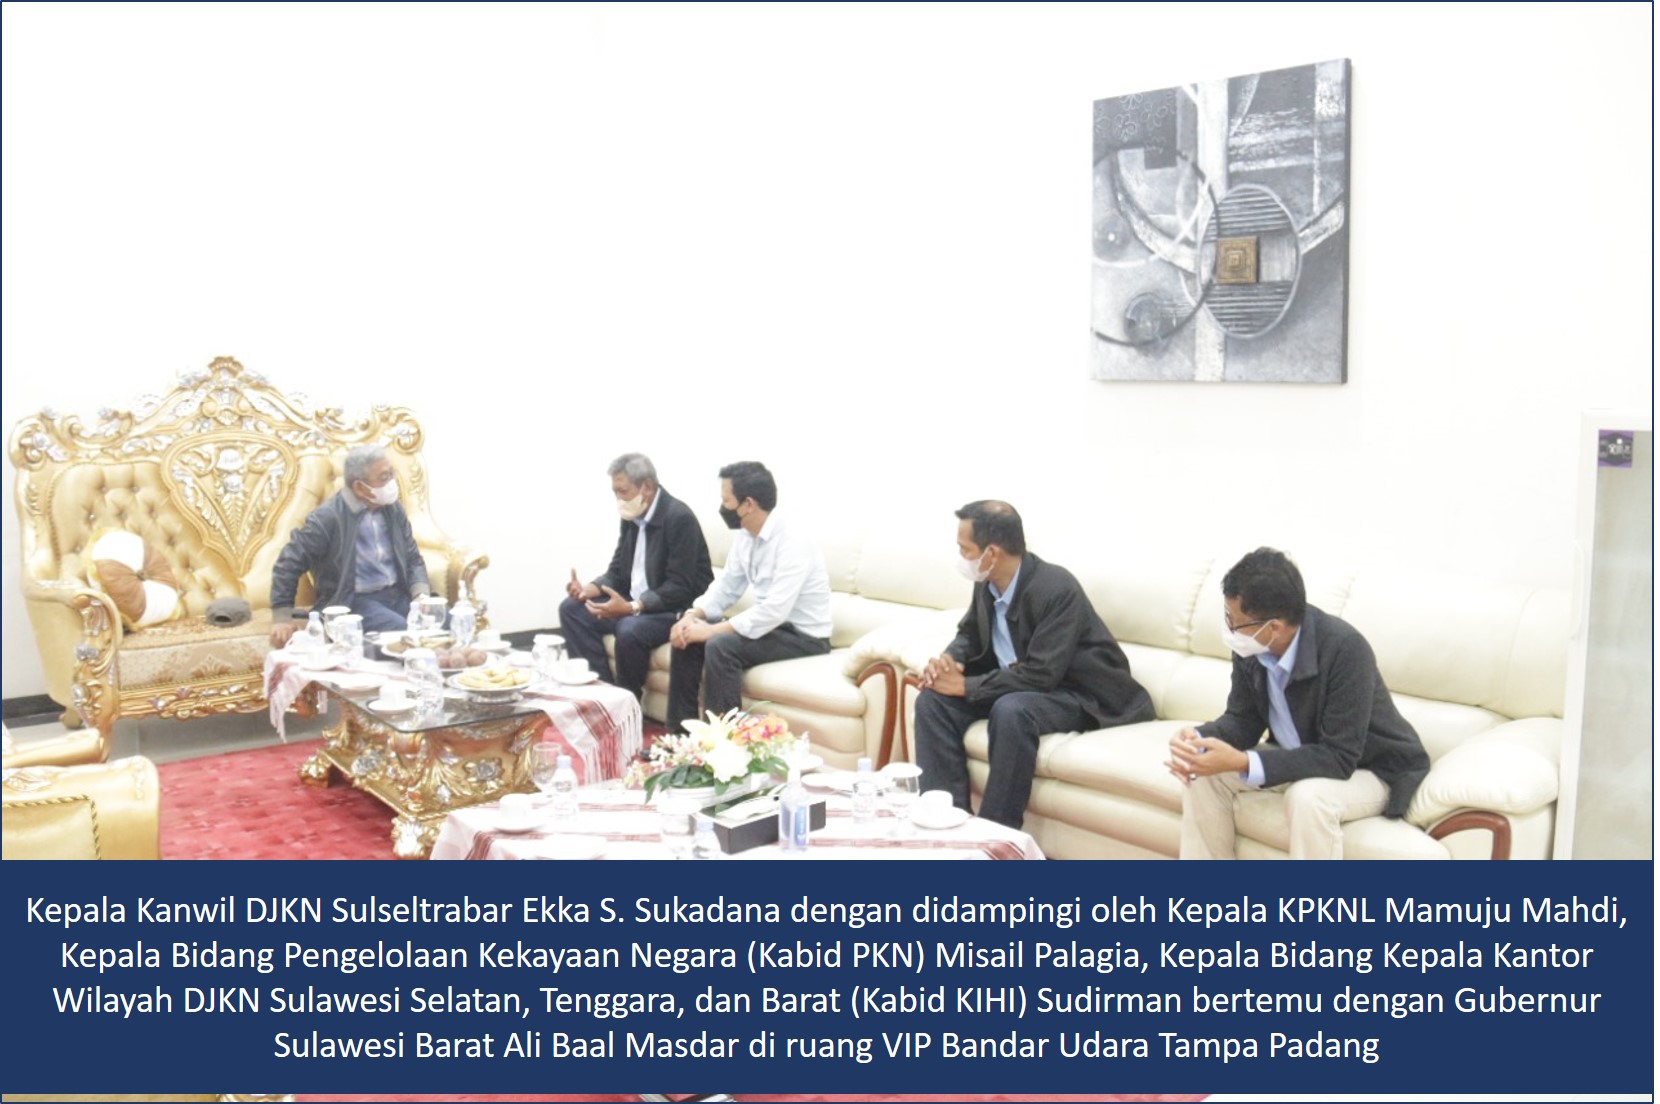 Kolaborasi Pemerintah Pusat, Pemerintah Daerah, dan Private Sector dalam Pembangunan Sektor Transportasi Laut Sulawesi Barat